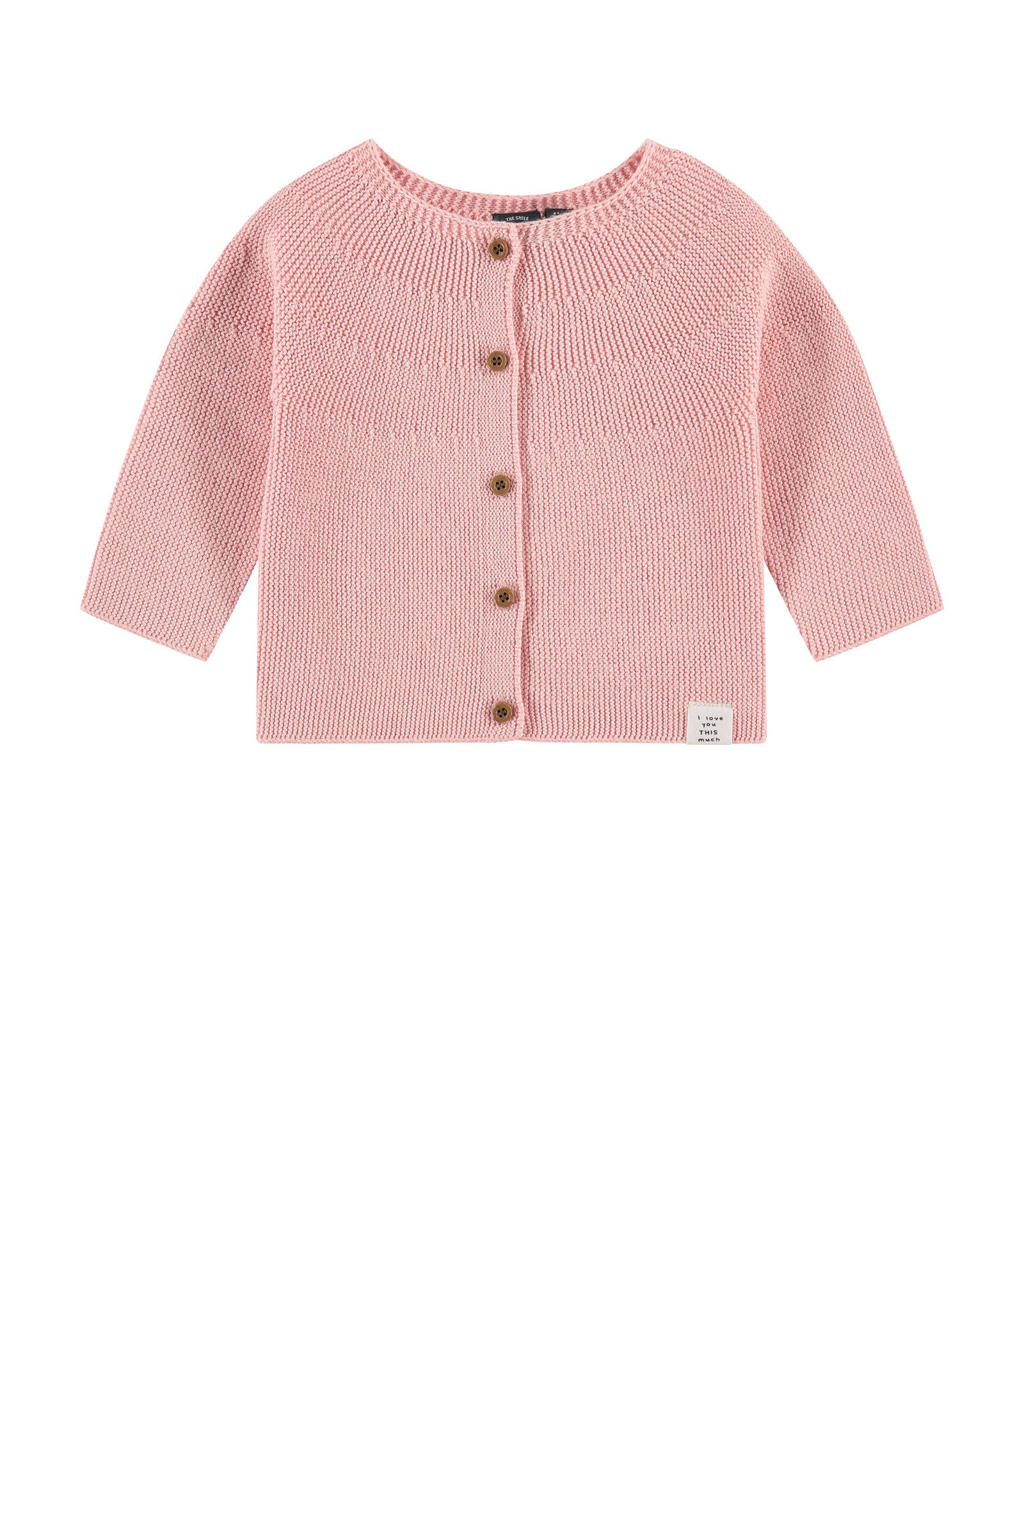 Babyface baby vest roze